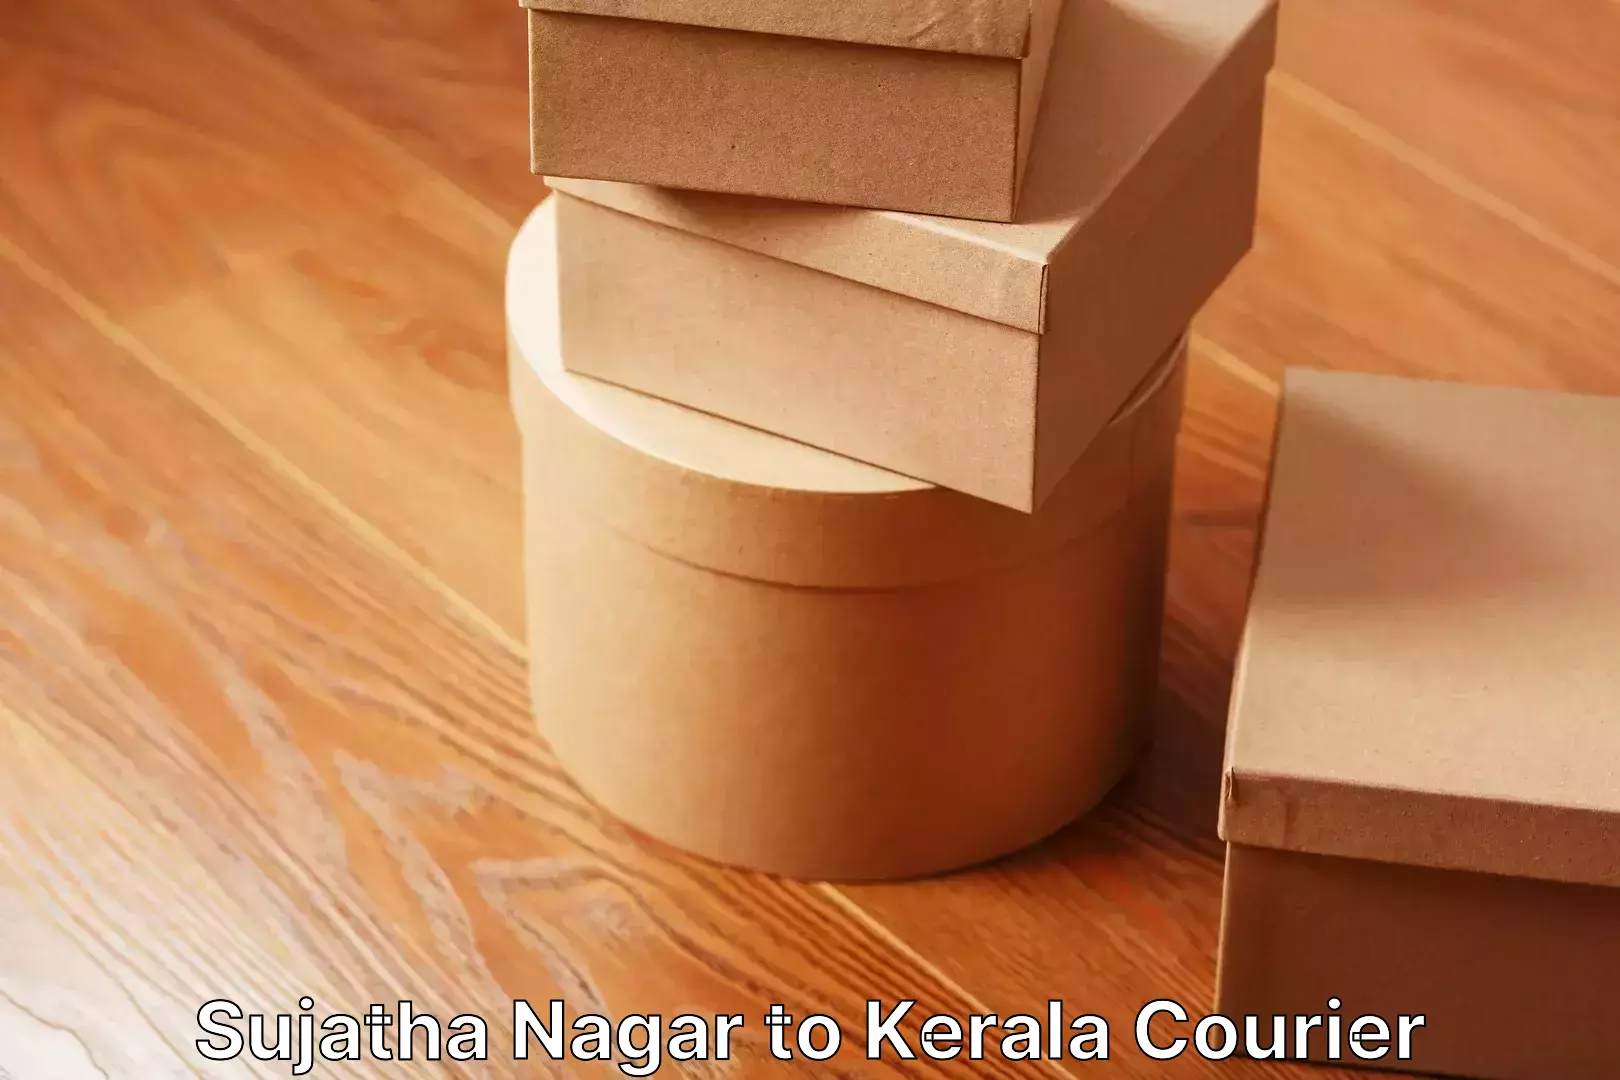 Moving and packing experts Sujatha Nagar to Kerala